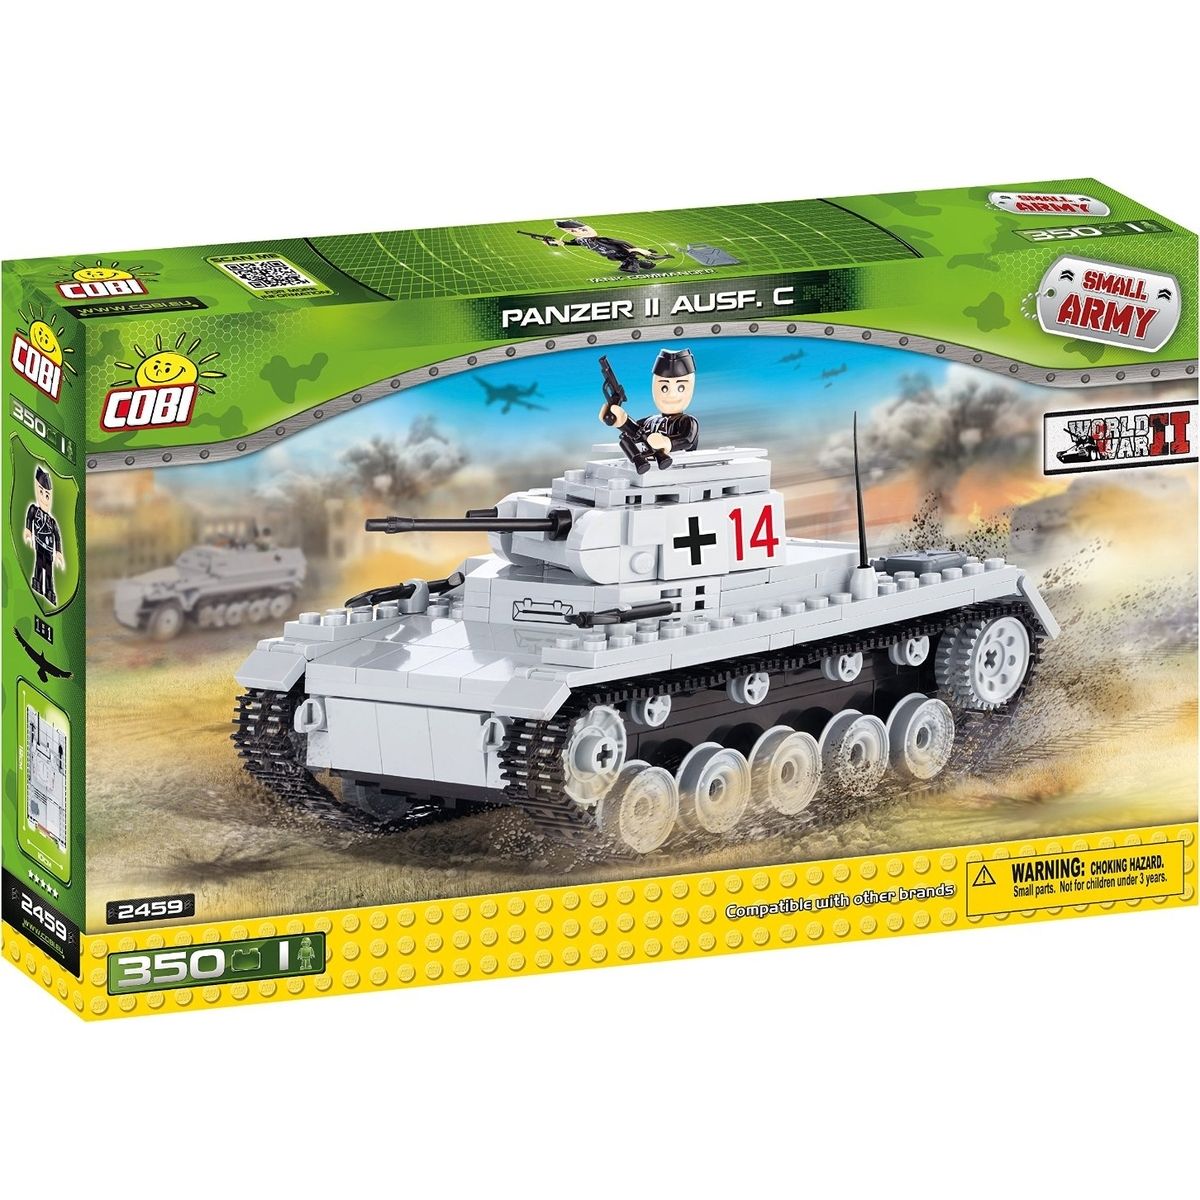 COBI 2459 Small Army WW Panzer II Ausf. C